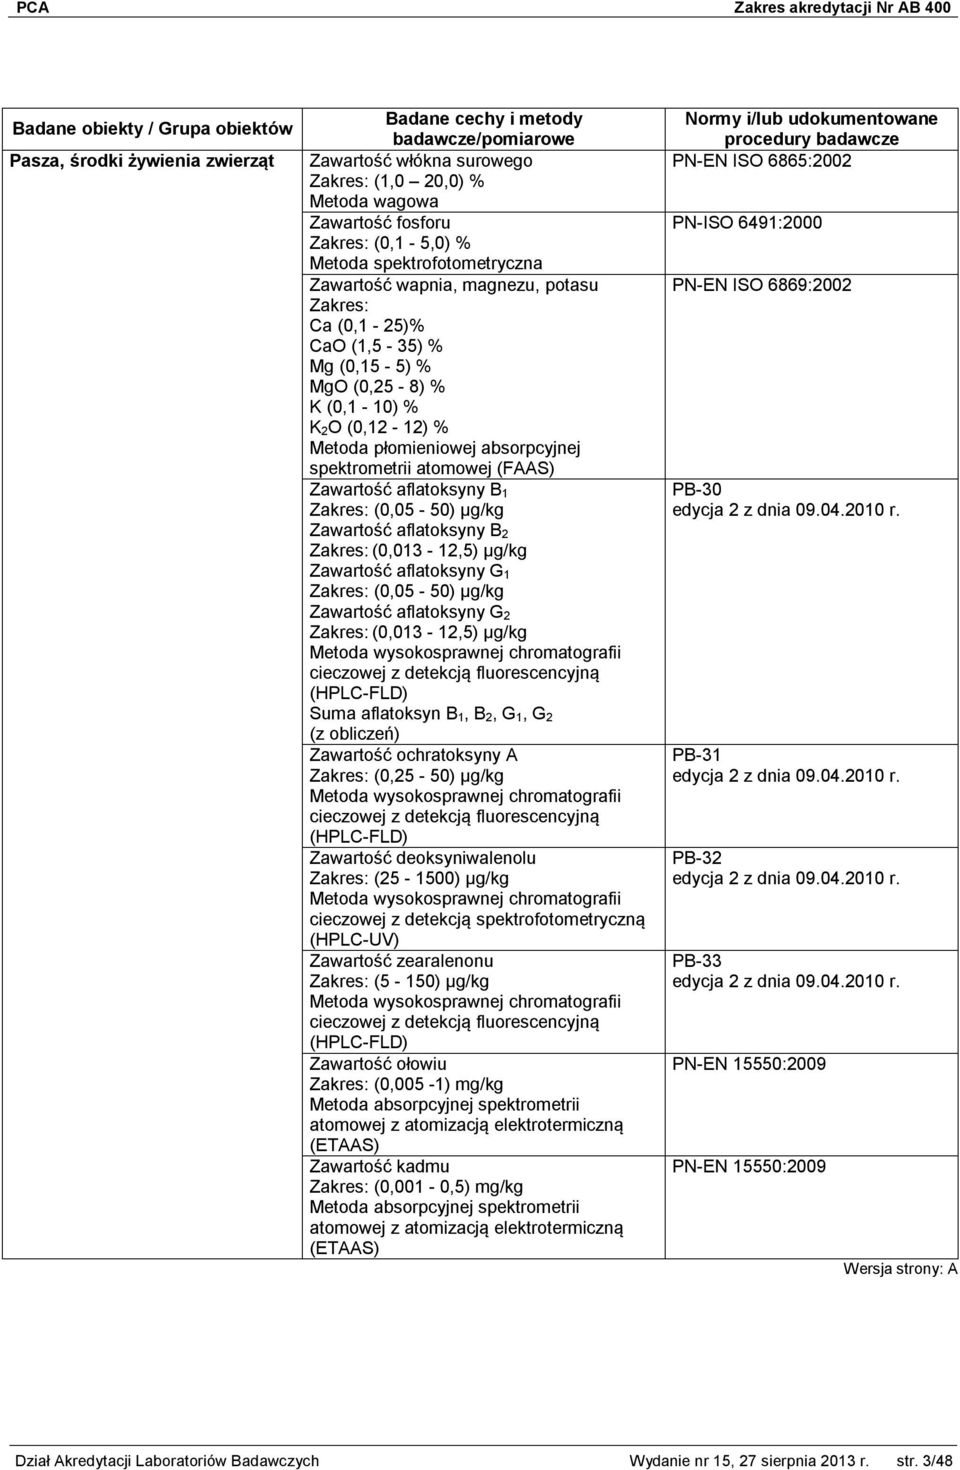 Zawartość aflatoksyny G 2 Zakres: (0,013-12,5) μg/kg Metoda wysokosprawnej chromatografii cieczowej z detekcją fluorescencyjną (HPLC-FLD) Suma aflatoksyn B 1, B 2, G 1, G 2 Zawartość ochratoksyny A